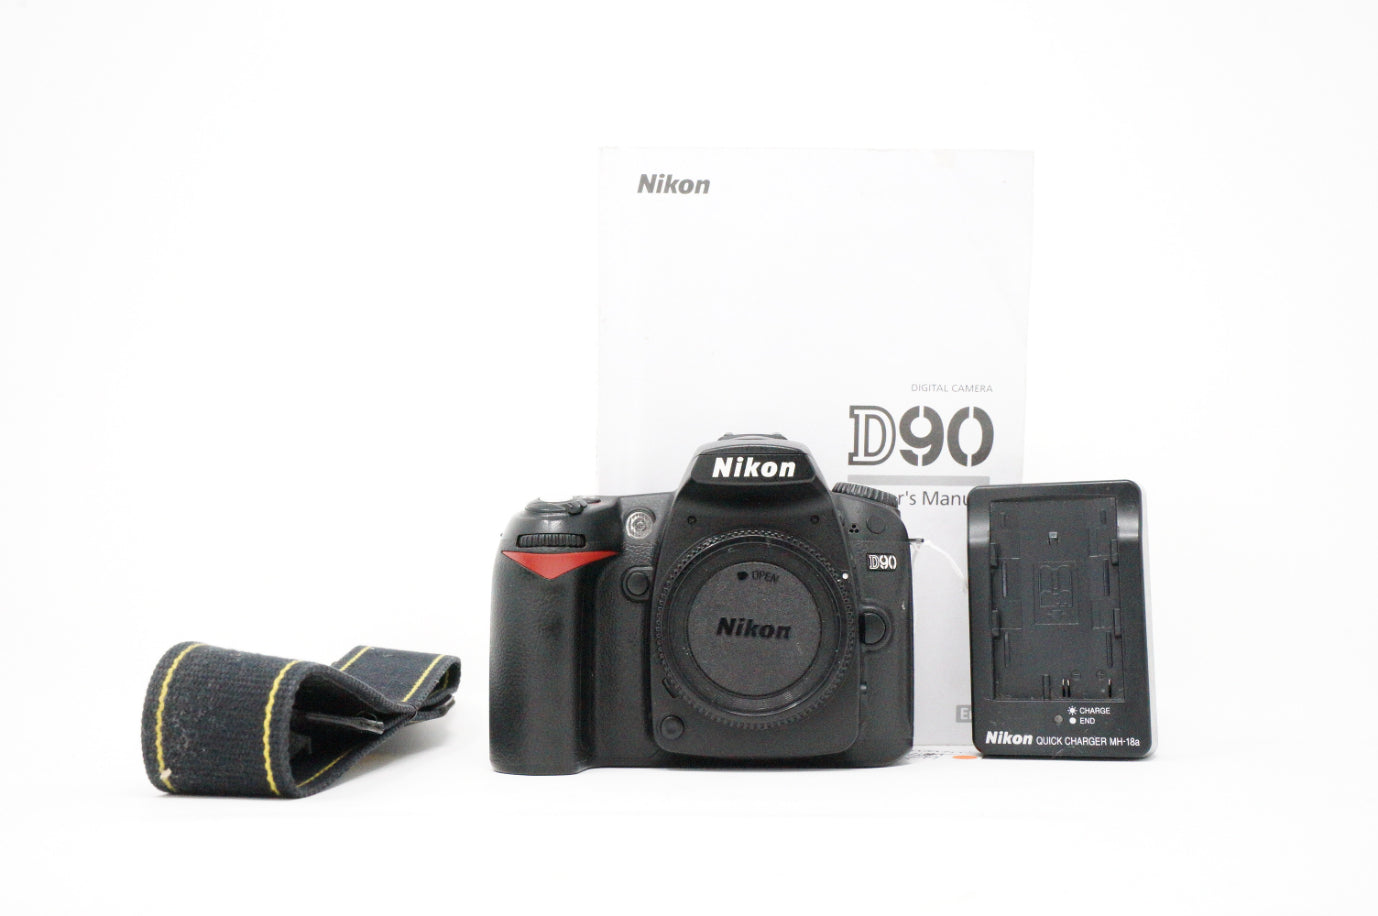 Used Nikon D90 DSLR camera body